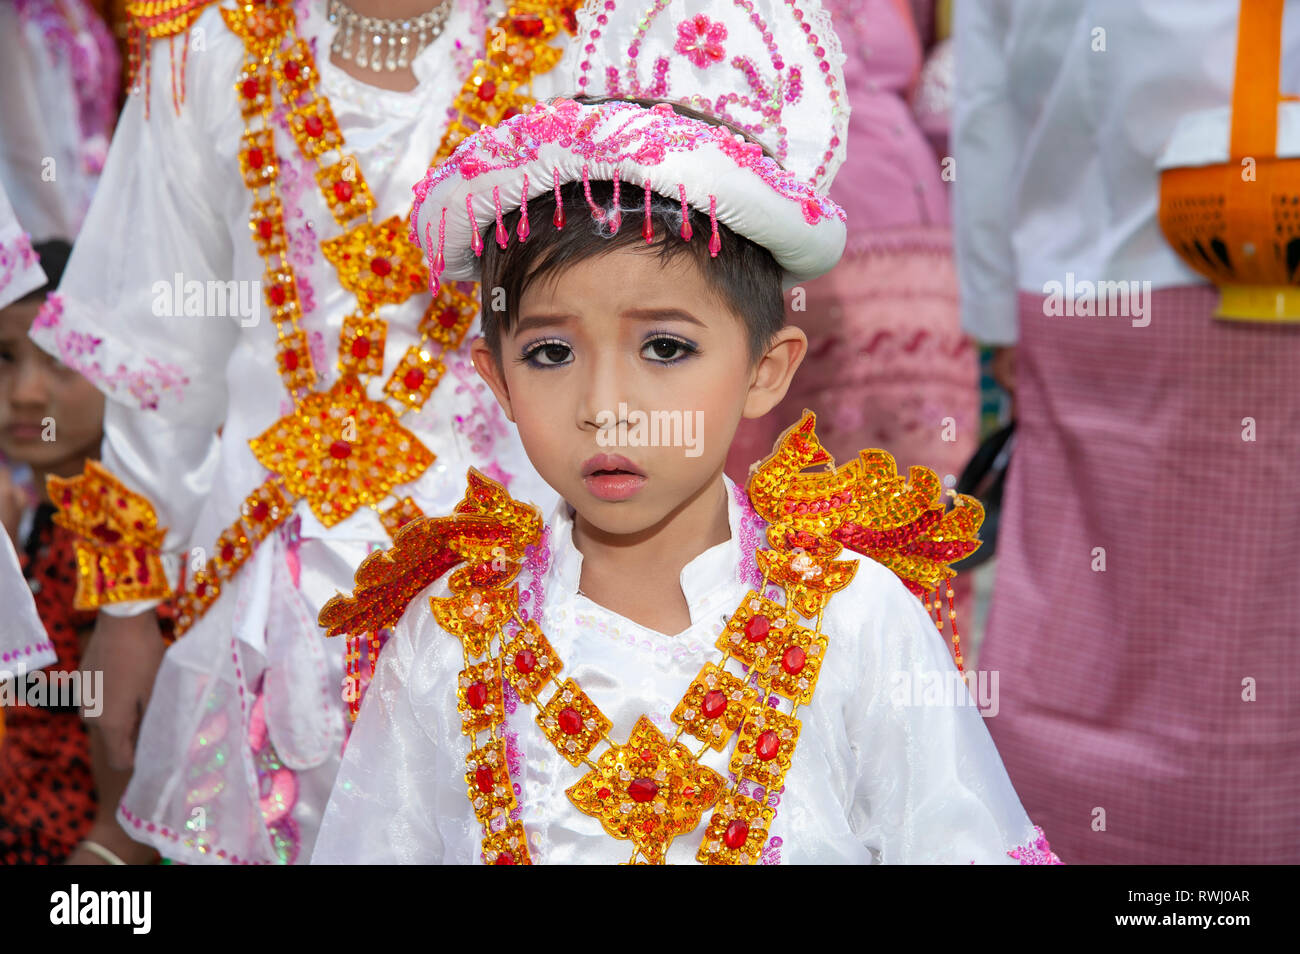 Un giovane ragazzo birmano vestito in costume buddista e la faccia fatta con il trucco assiste la sua venuta di età cerimonia in Myanmar Mandalay Foto Stock